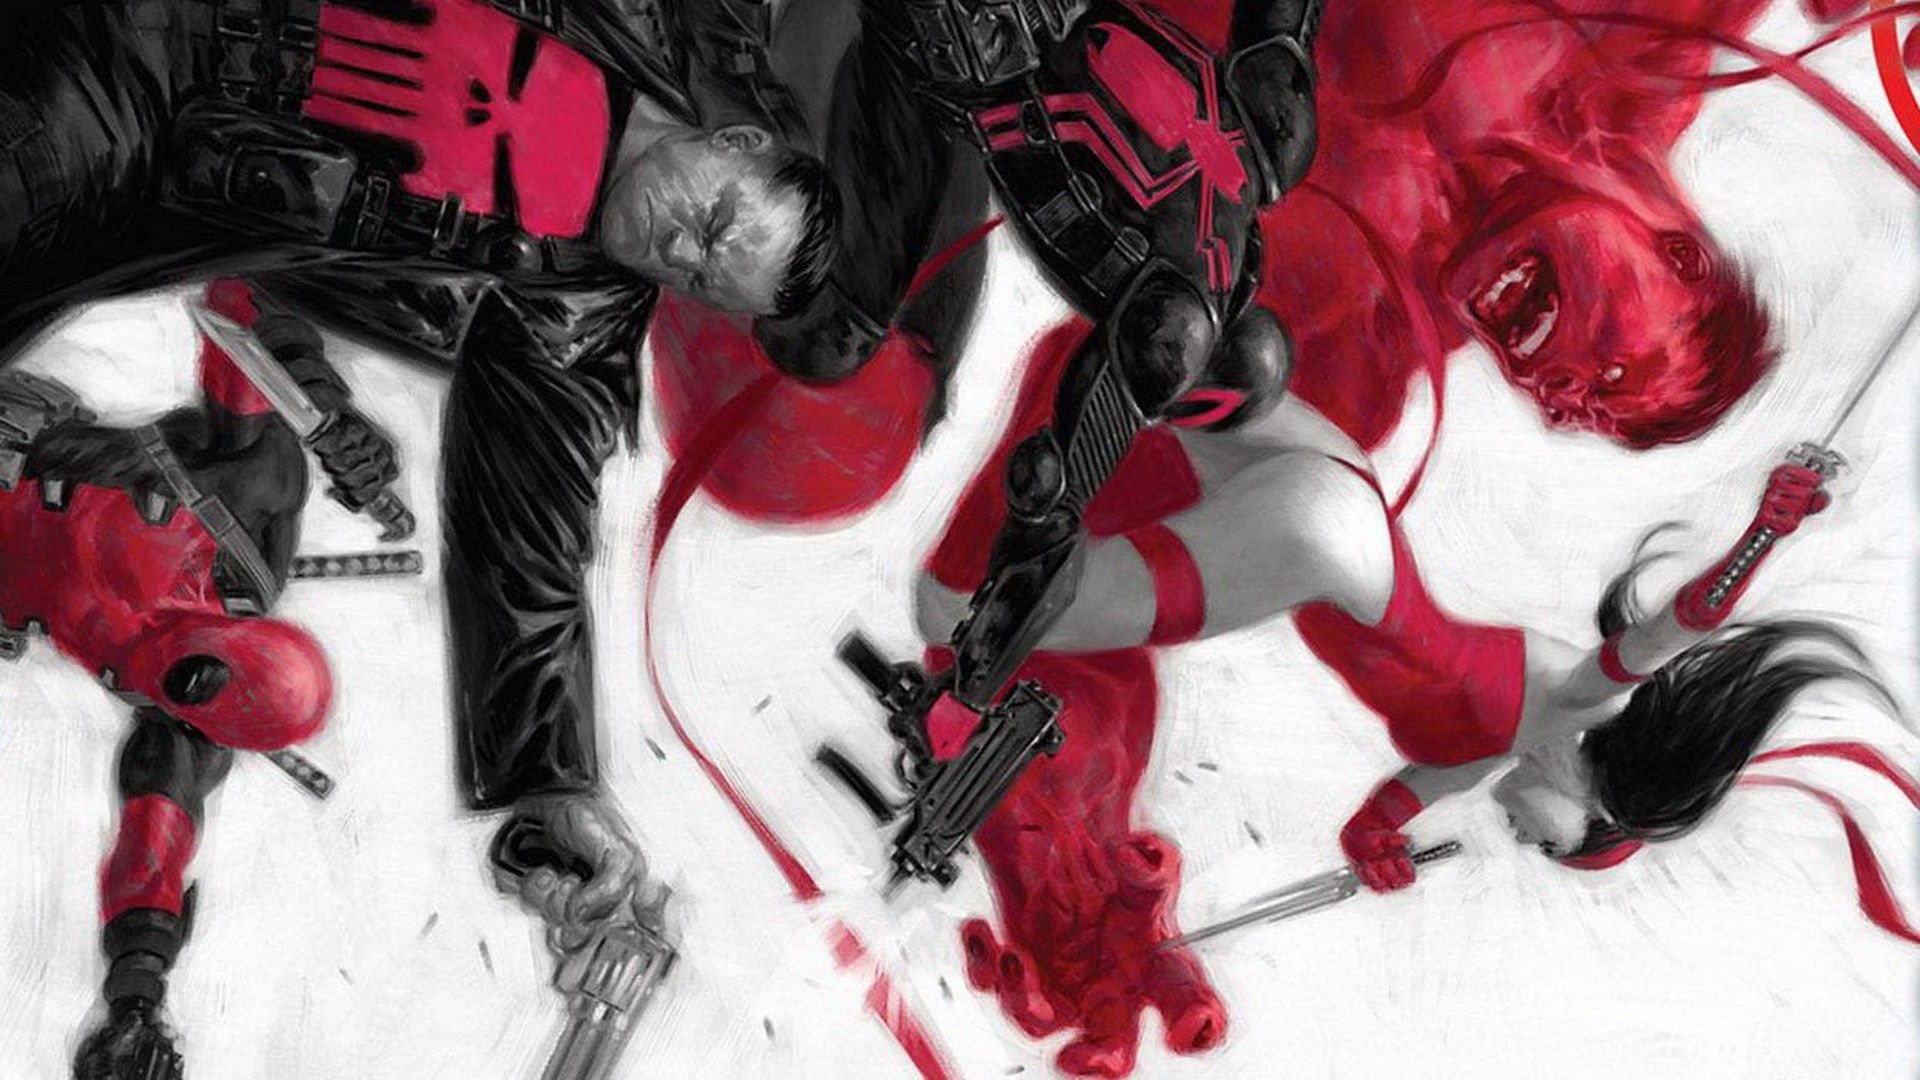 Punisher Marvel Comics 4K Wallpaper #4.2908